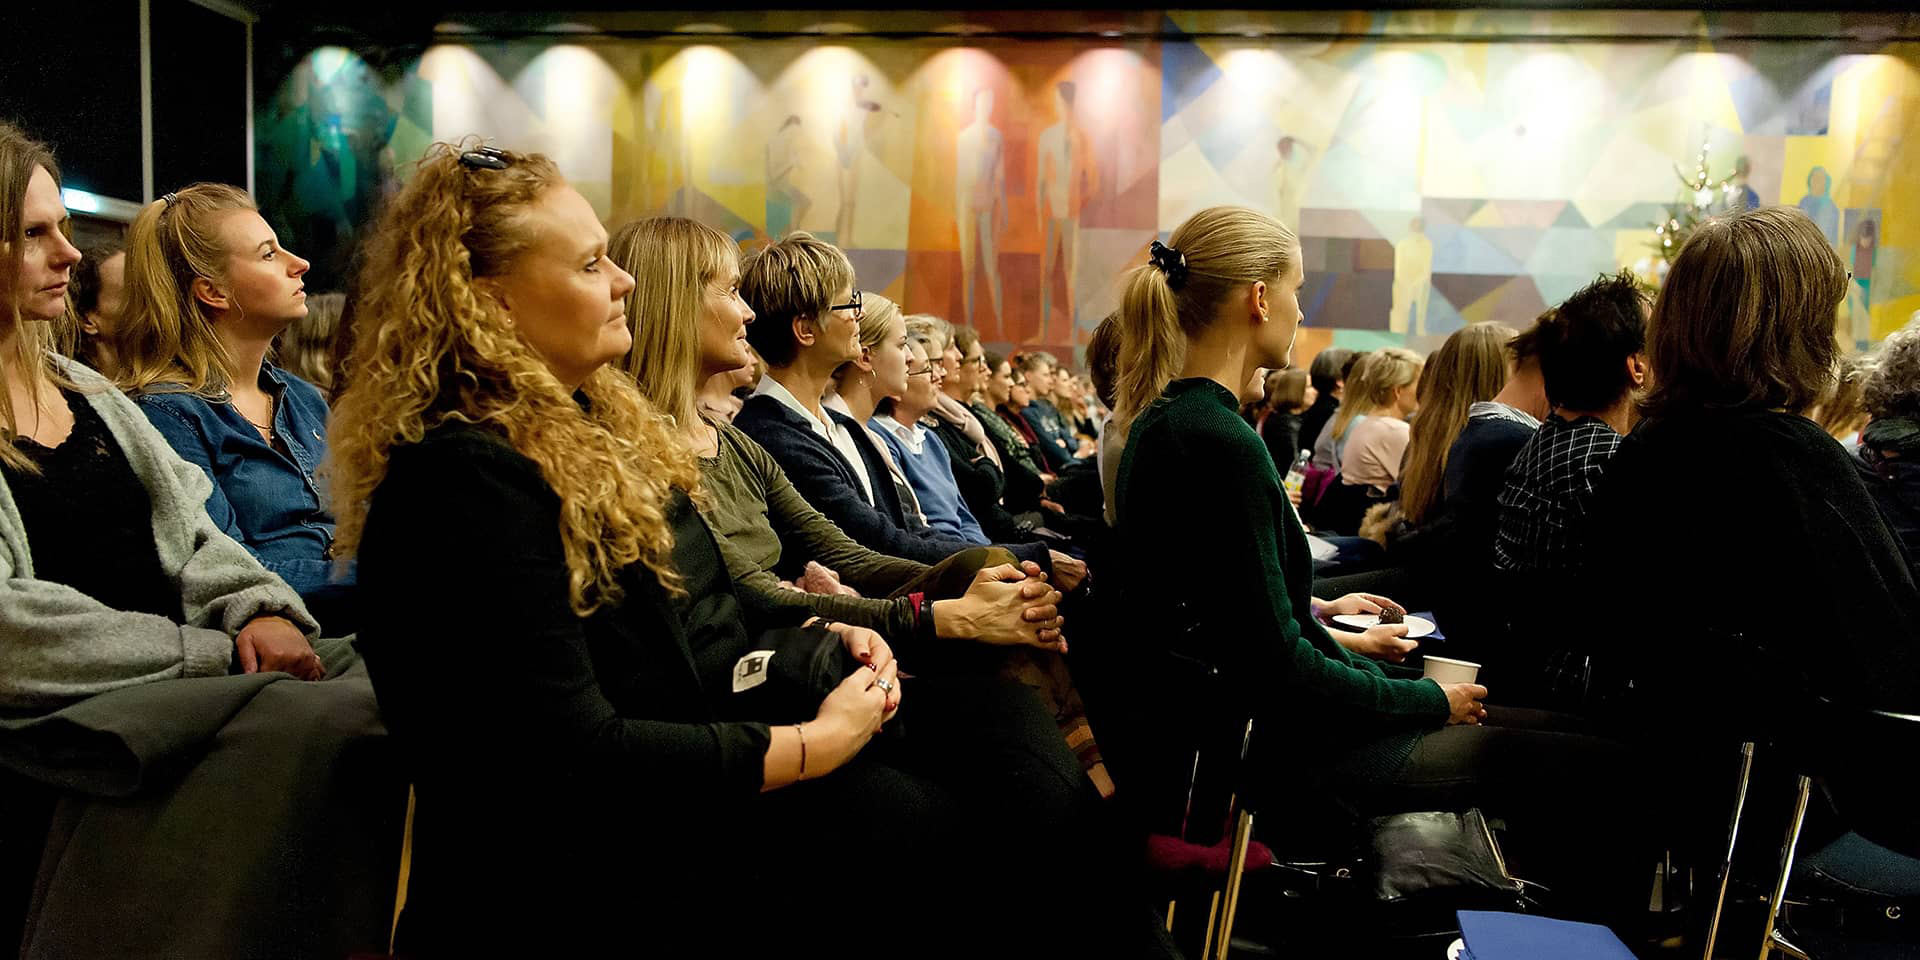 Billede af deltager ved et FOF Aarhus foredrag på Katedralskolen, Aarhus